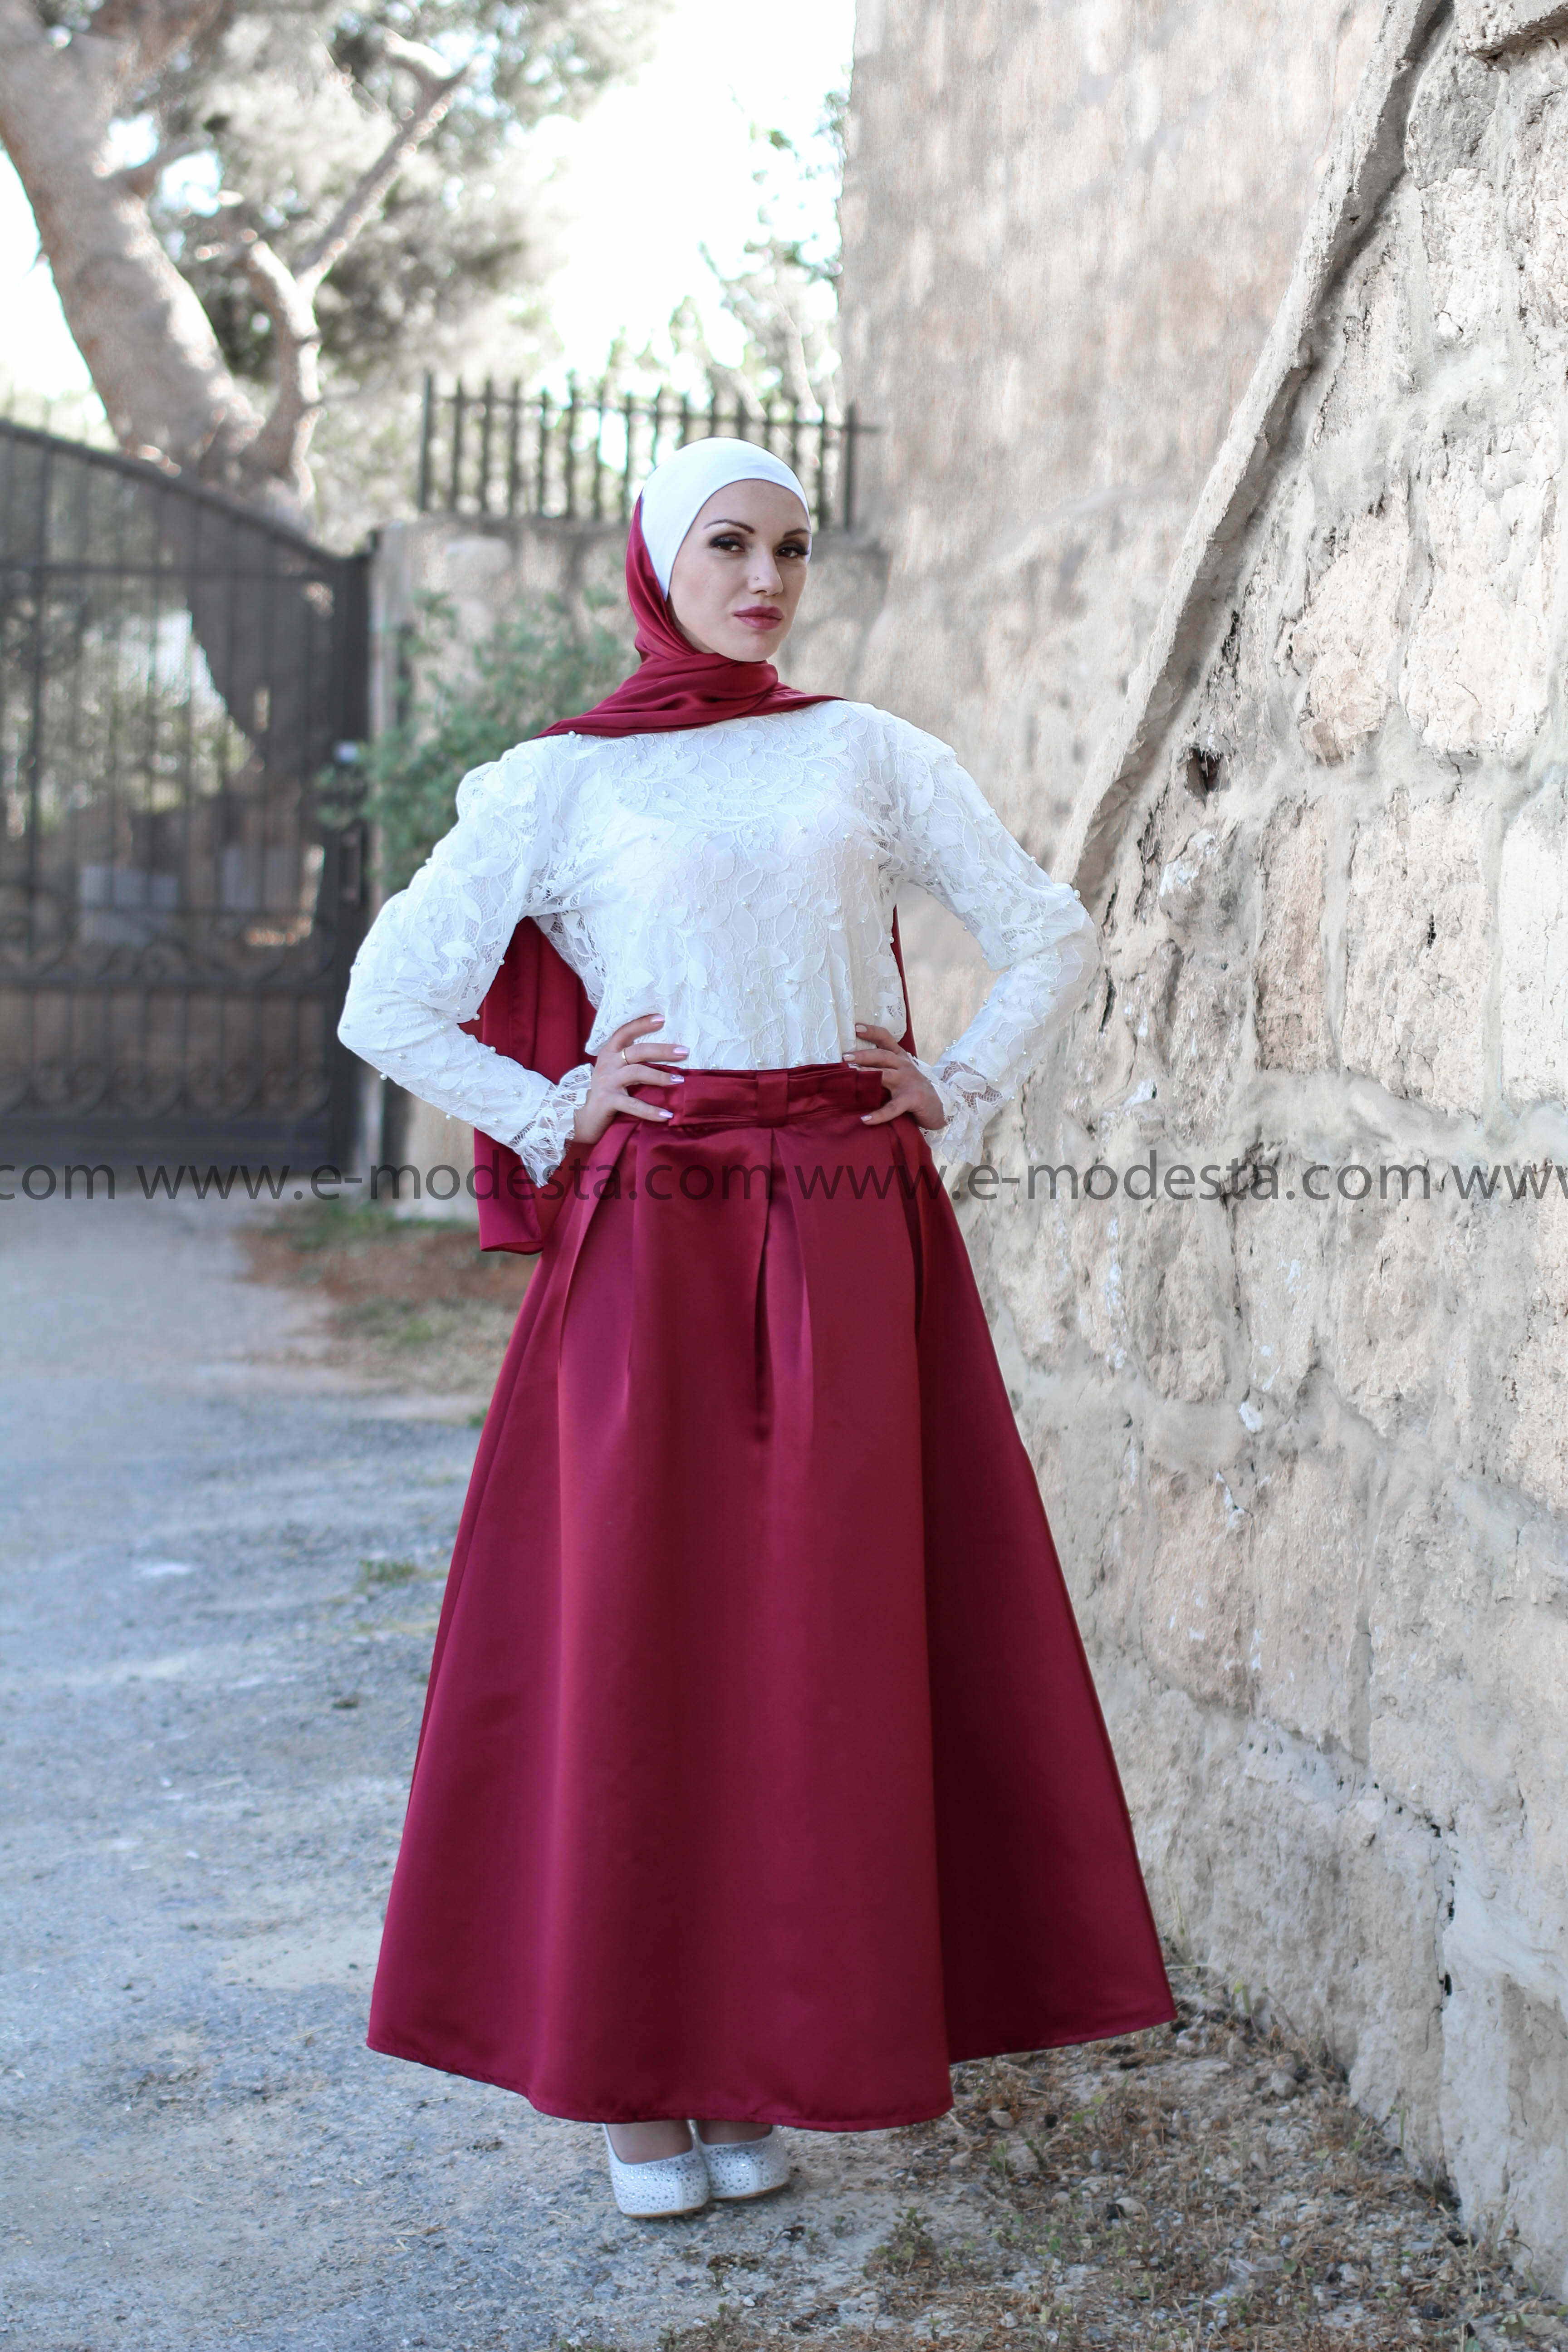 SALE RED Color Long High Waist Modest Maxi Skirt - Soft Satin - E-Modesta